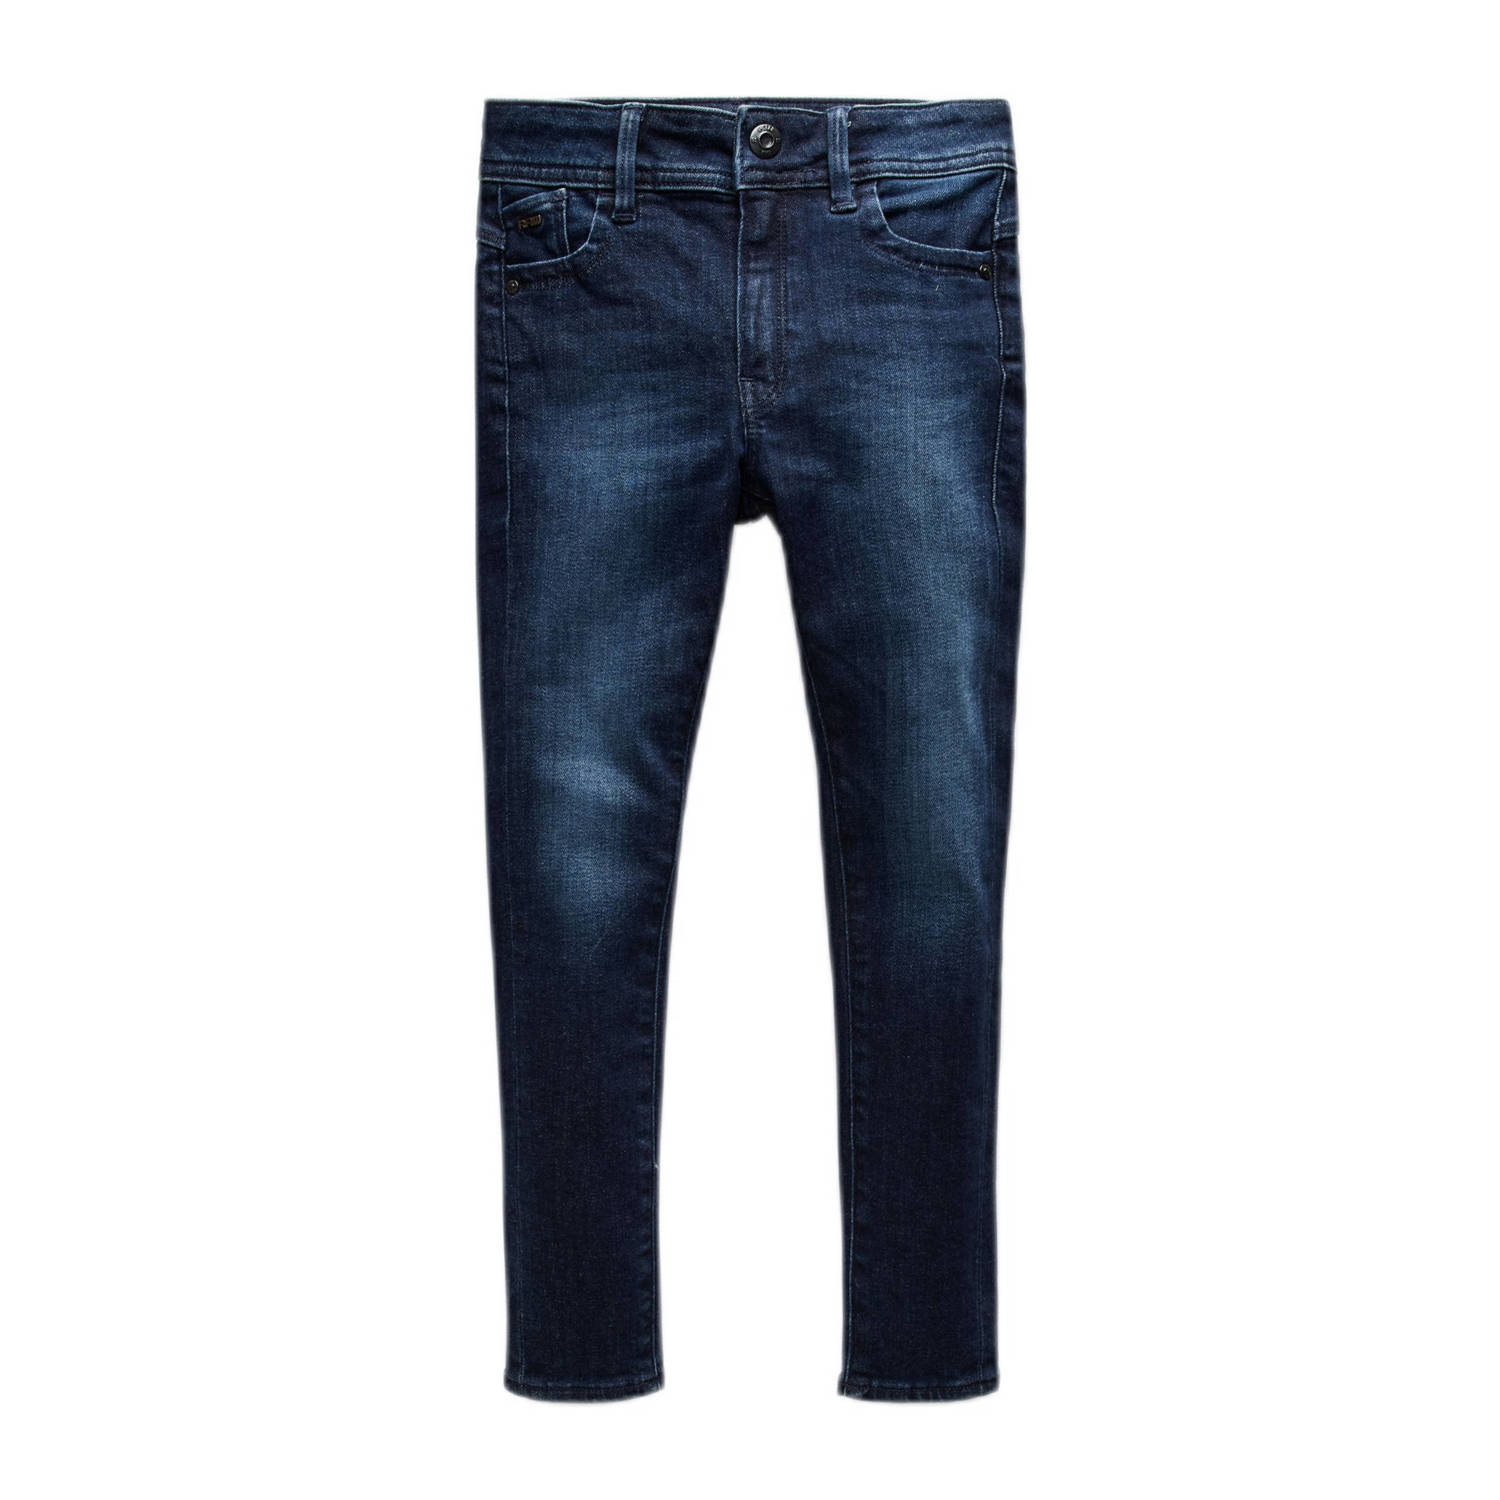 G-Star RAW skinny jeans faded indigo